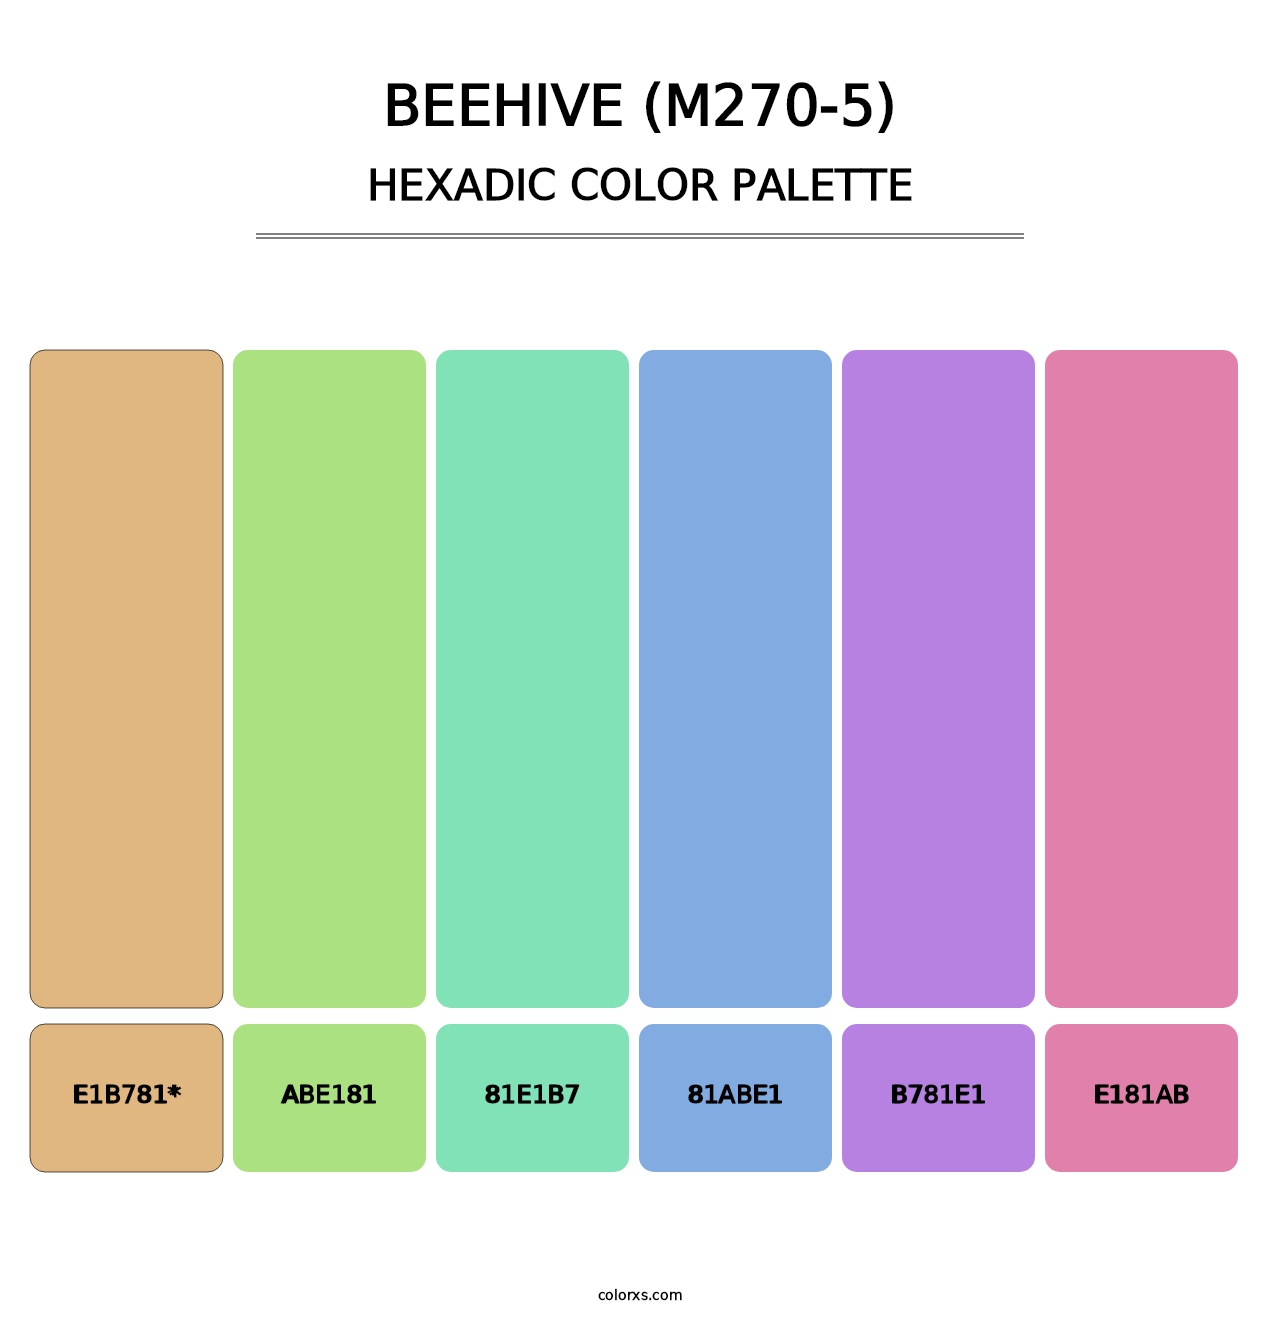 Beehive (M270-5) - Hexadic Color Palette